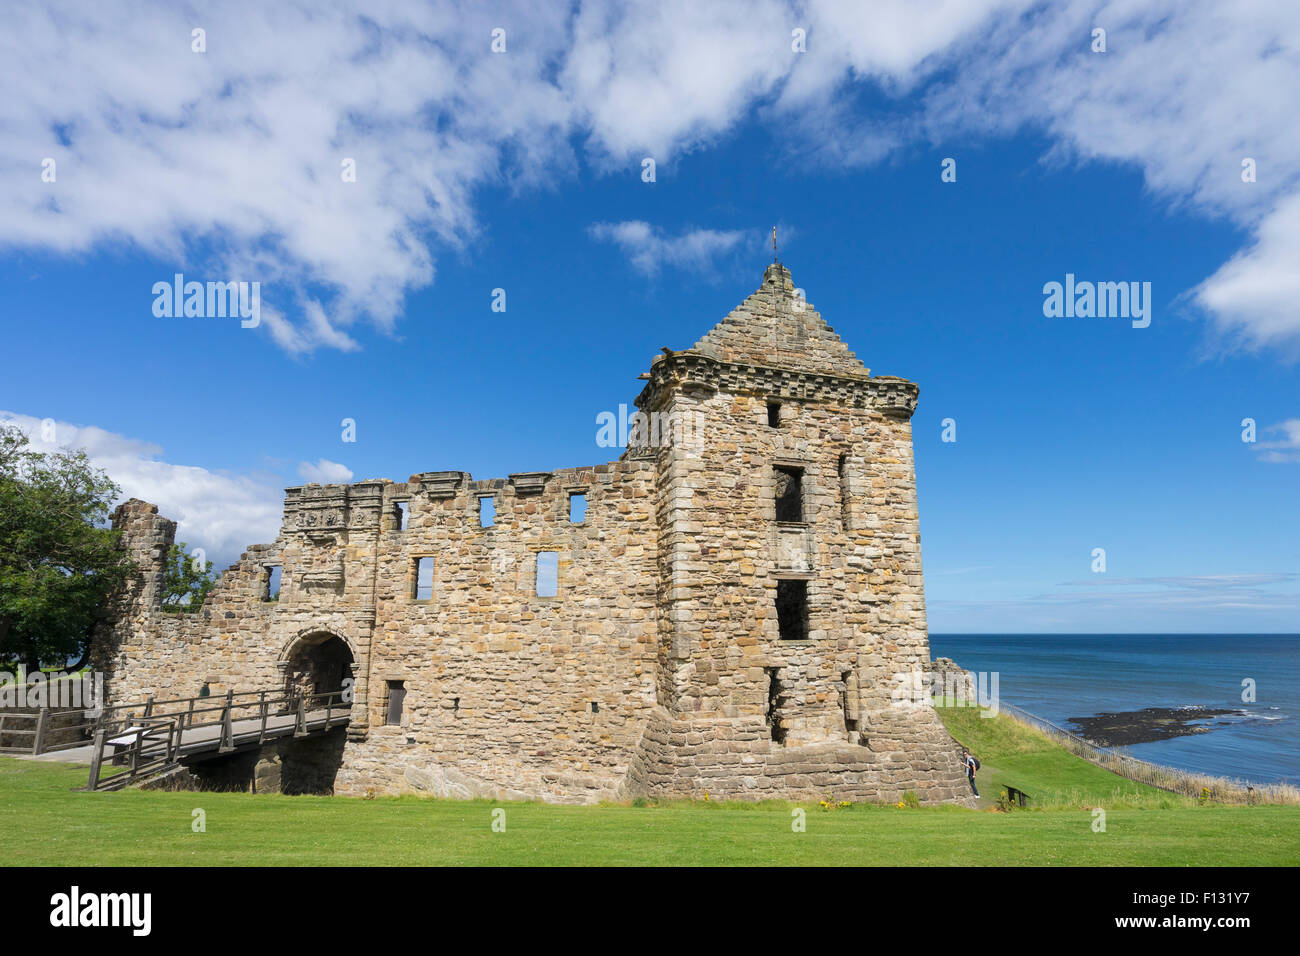 Ruines du château de St Andrews, St Andrews, Fife, Scotland Banque D'Images